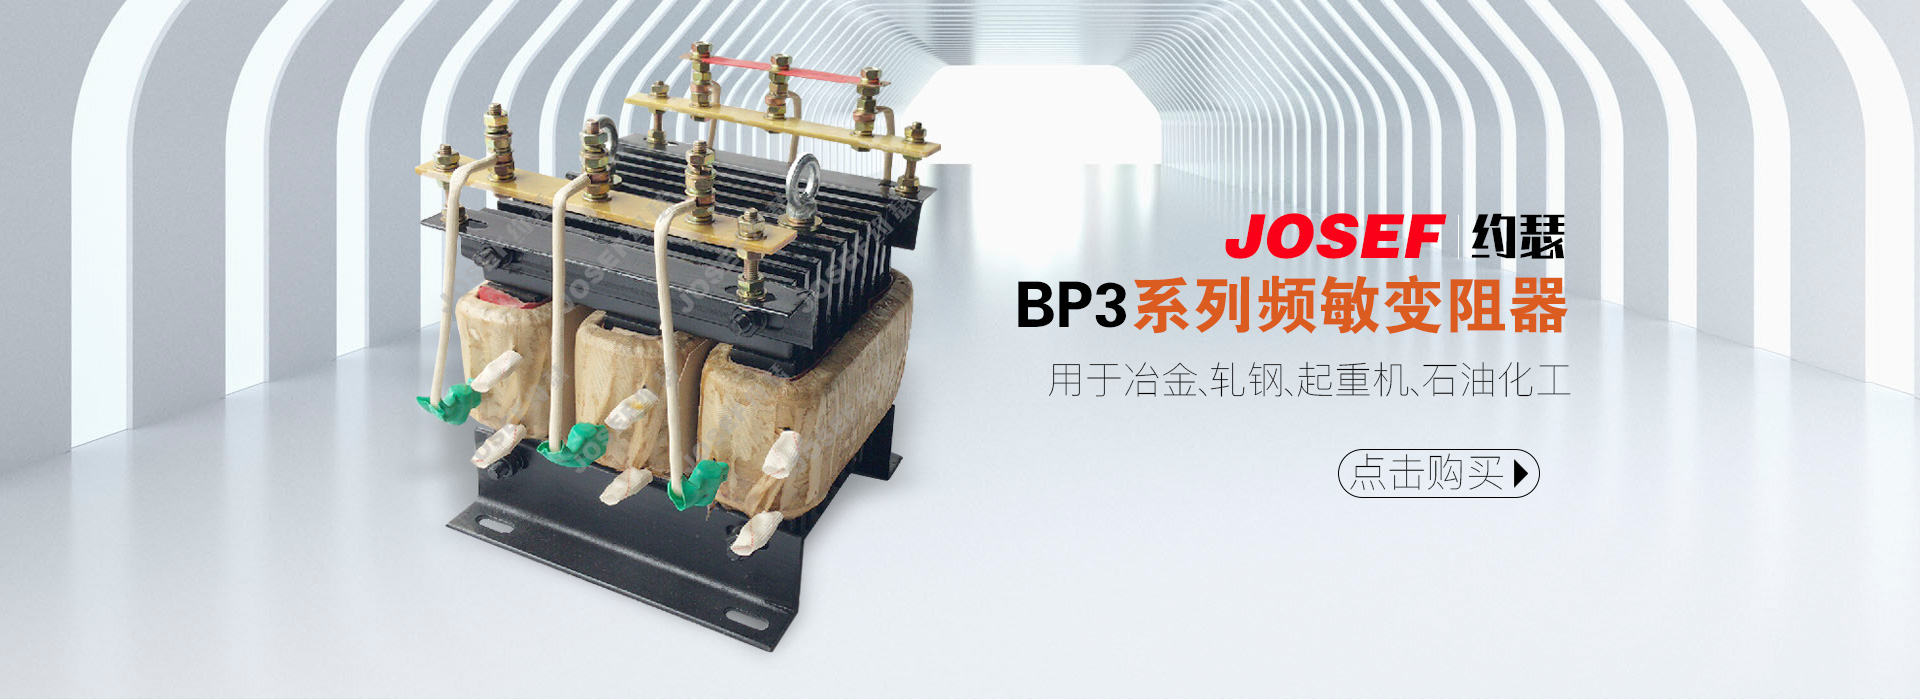 BP3系列频敏变阻器产品展示